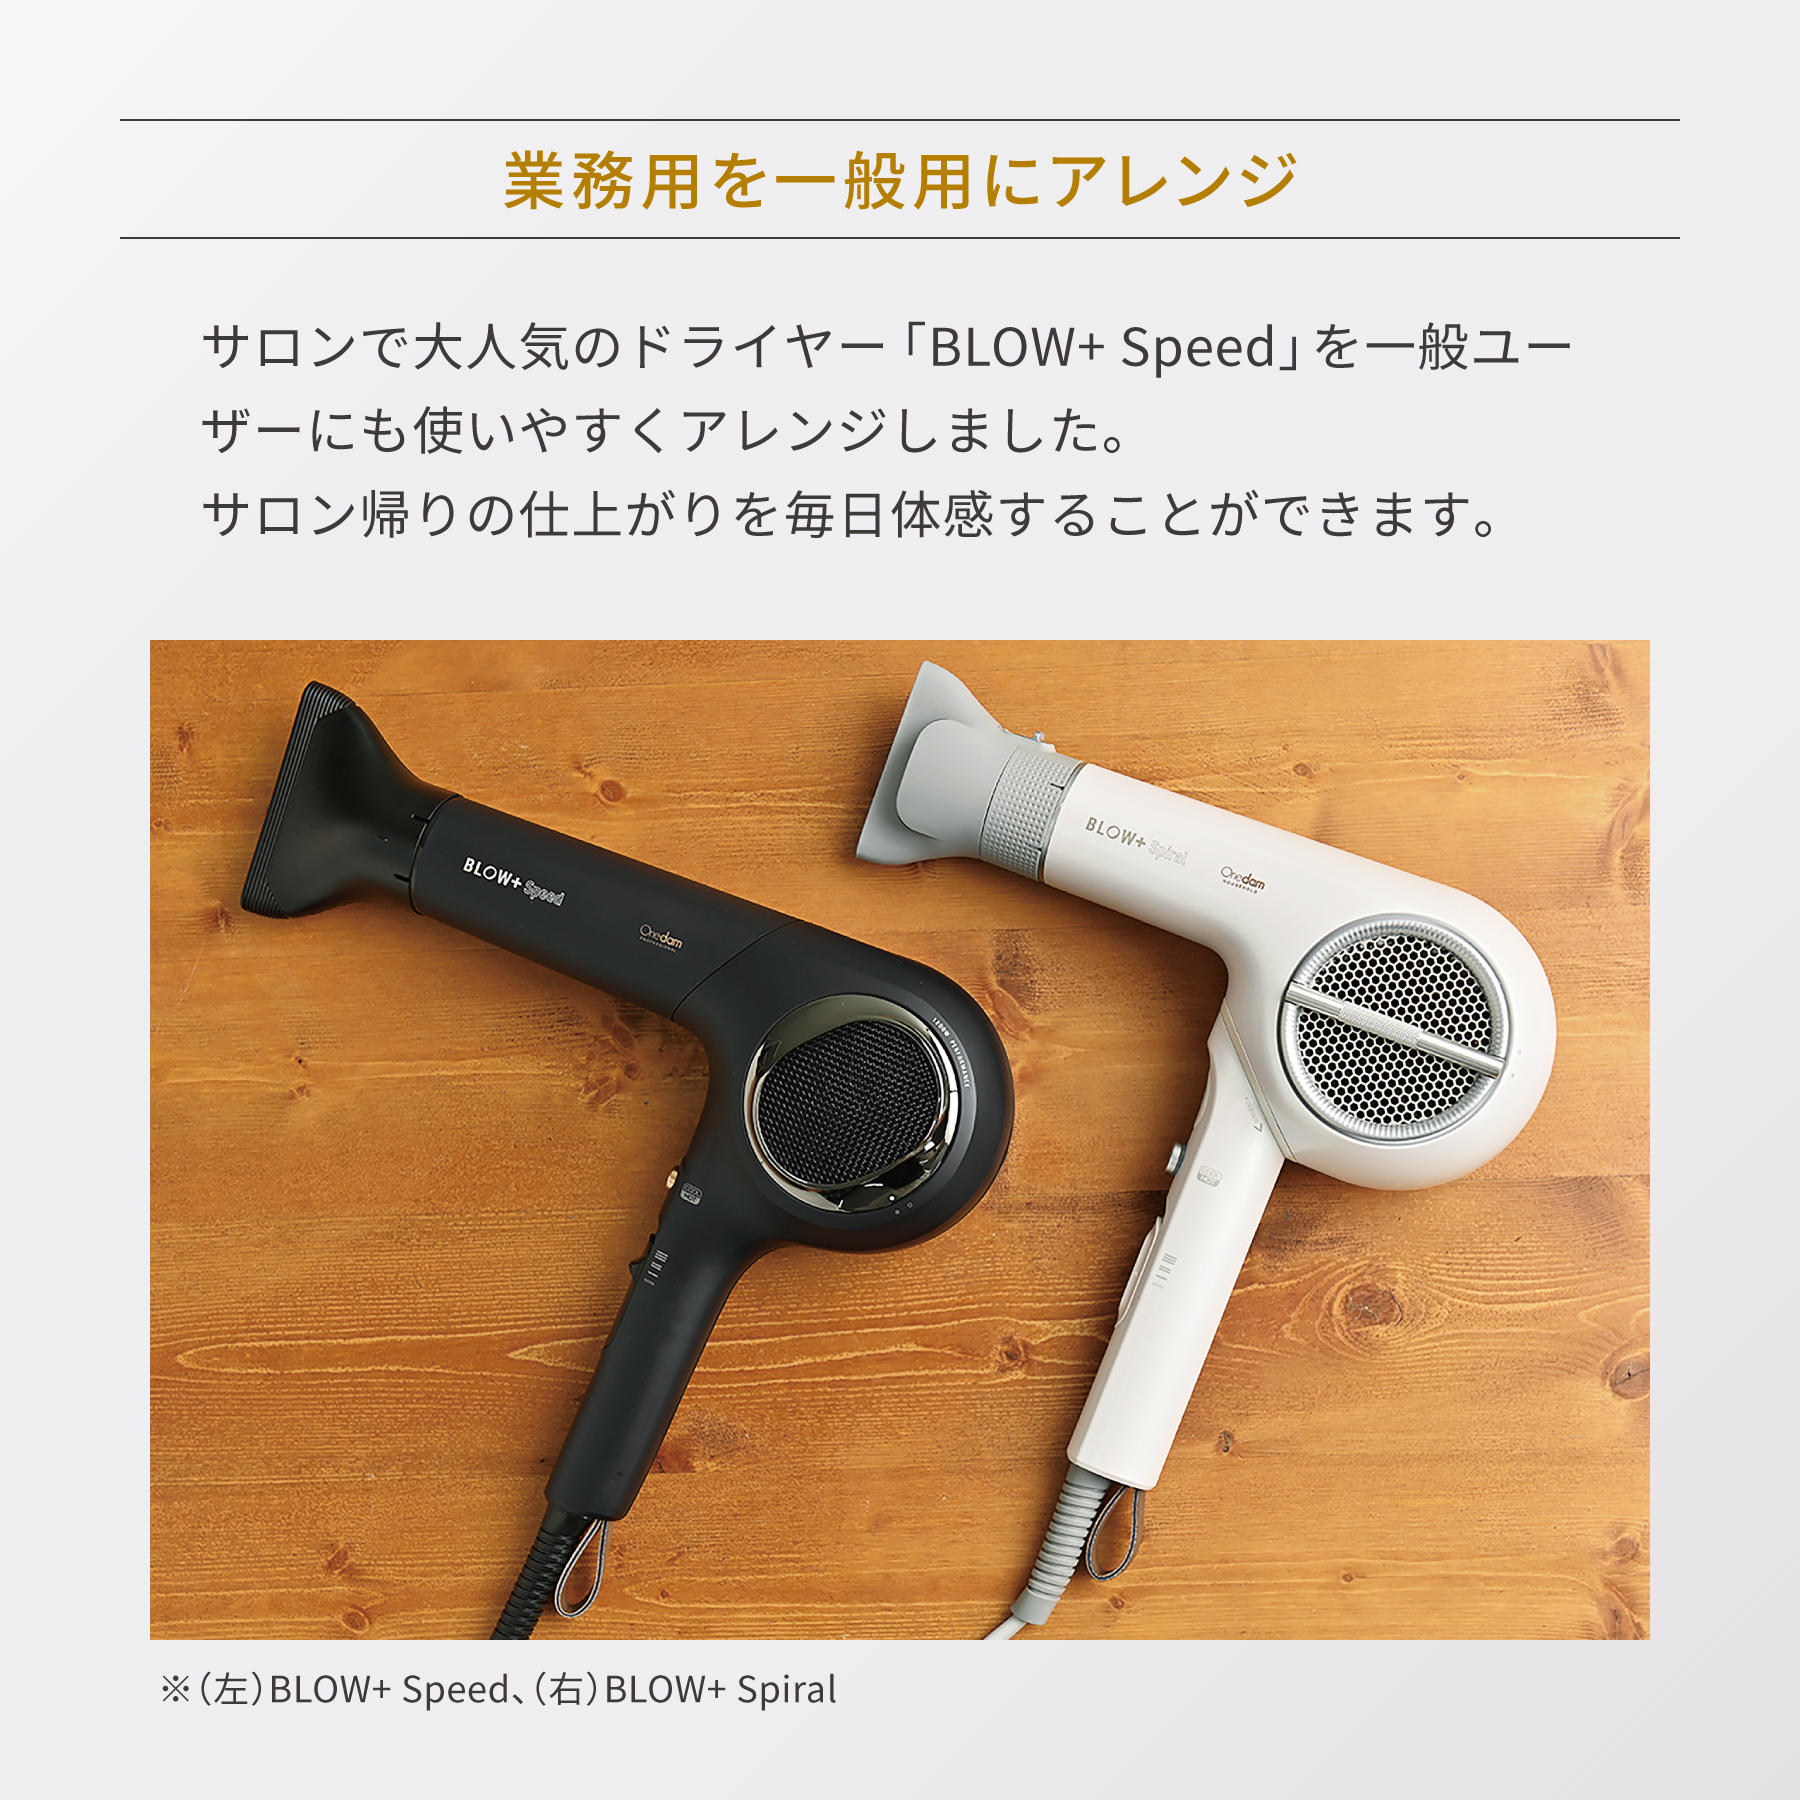 ワンダム プラズマケアヘア ドライヤー BLOW+Spiral HBD-701F - 美容/健康